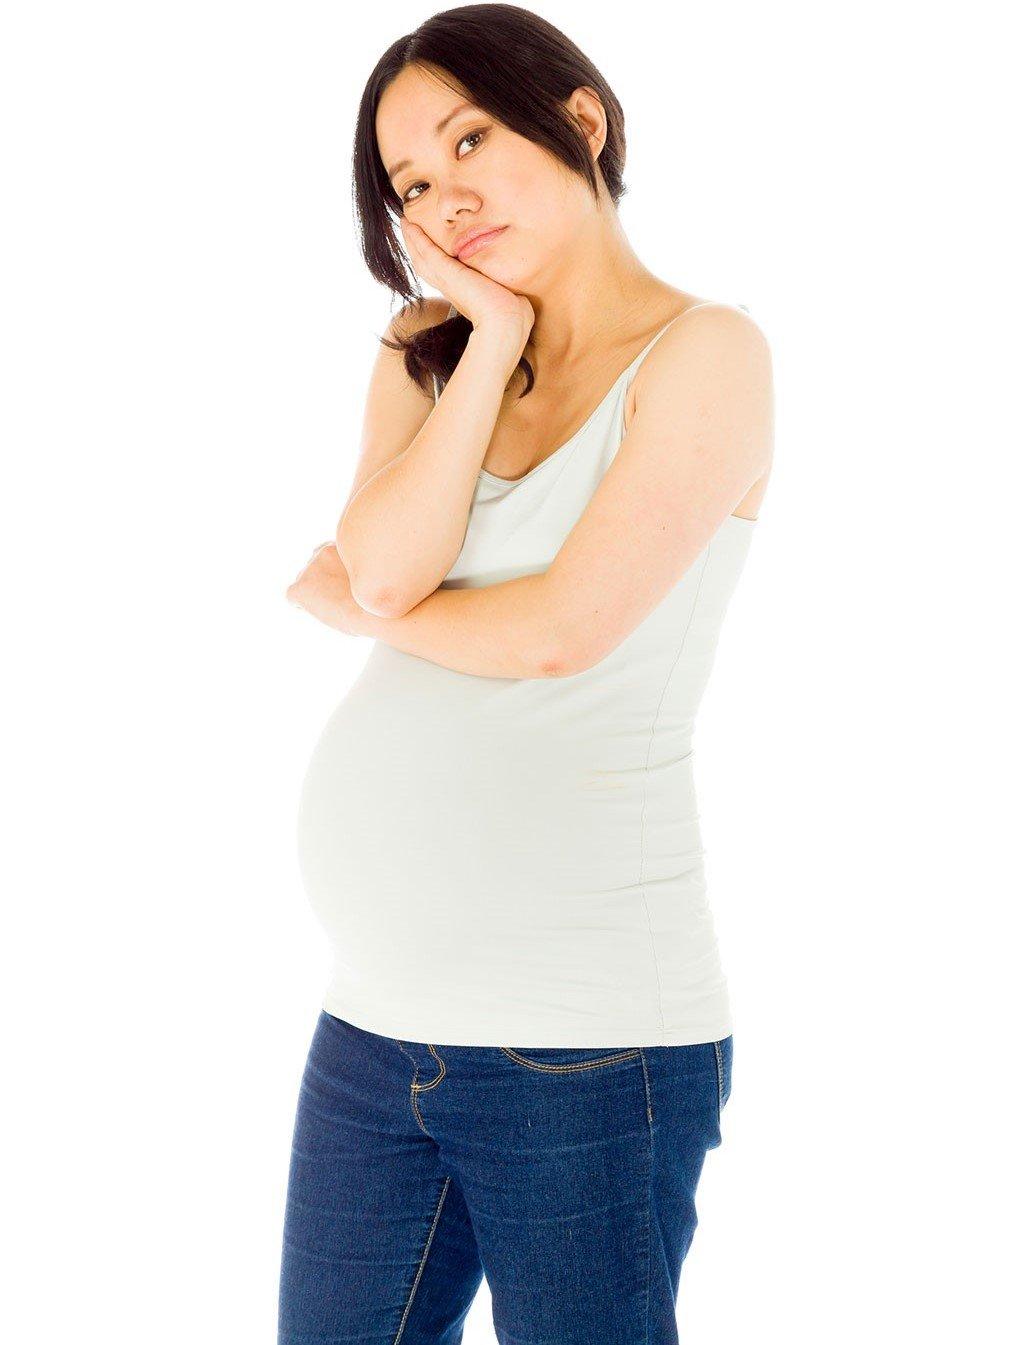 Cơn gò tử cung thường xuyên xuất hiện trong tuần thai này.